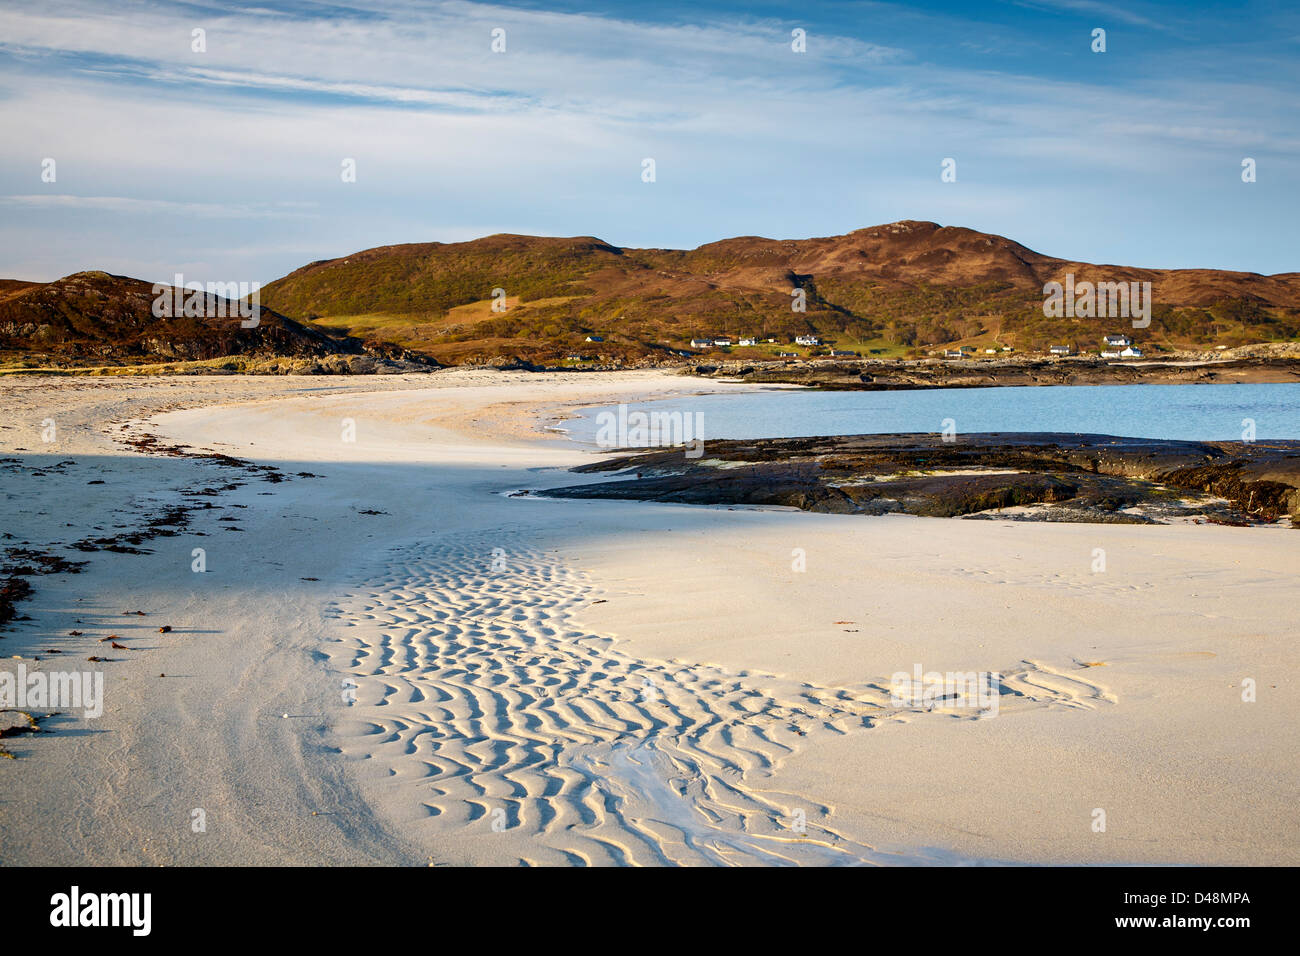 La plage de sable blanc de la baie de Sanna, Ardnamurchan, Highlands, Scotland UK Banque D'Images